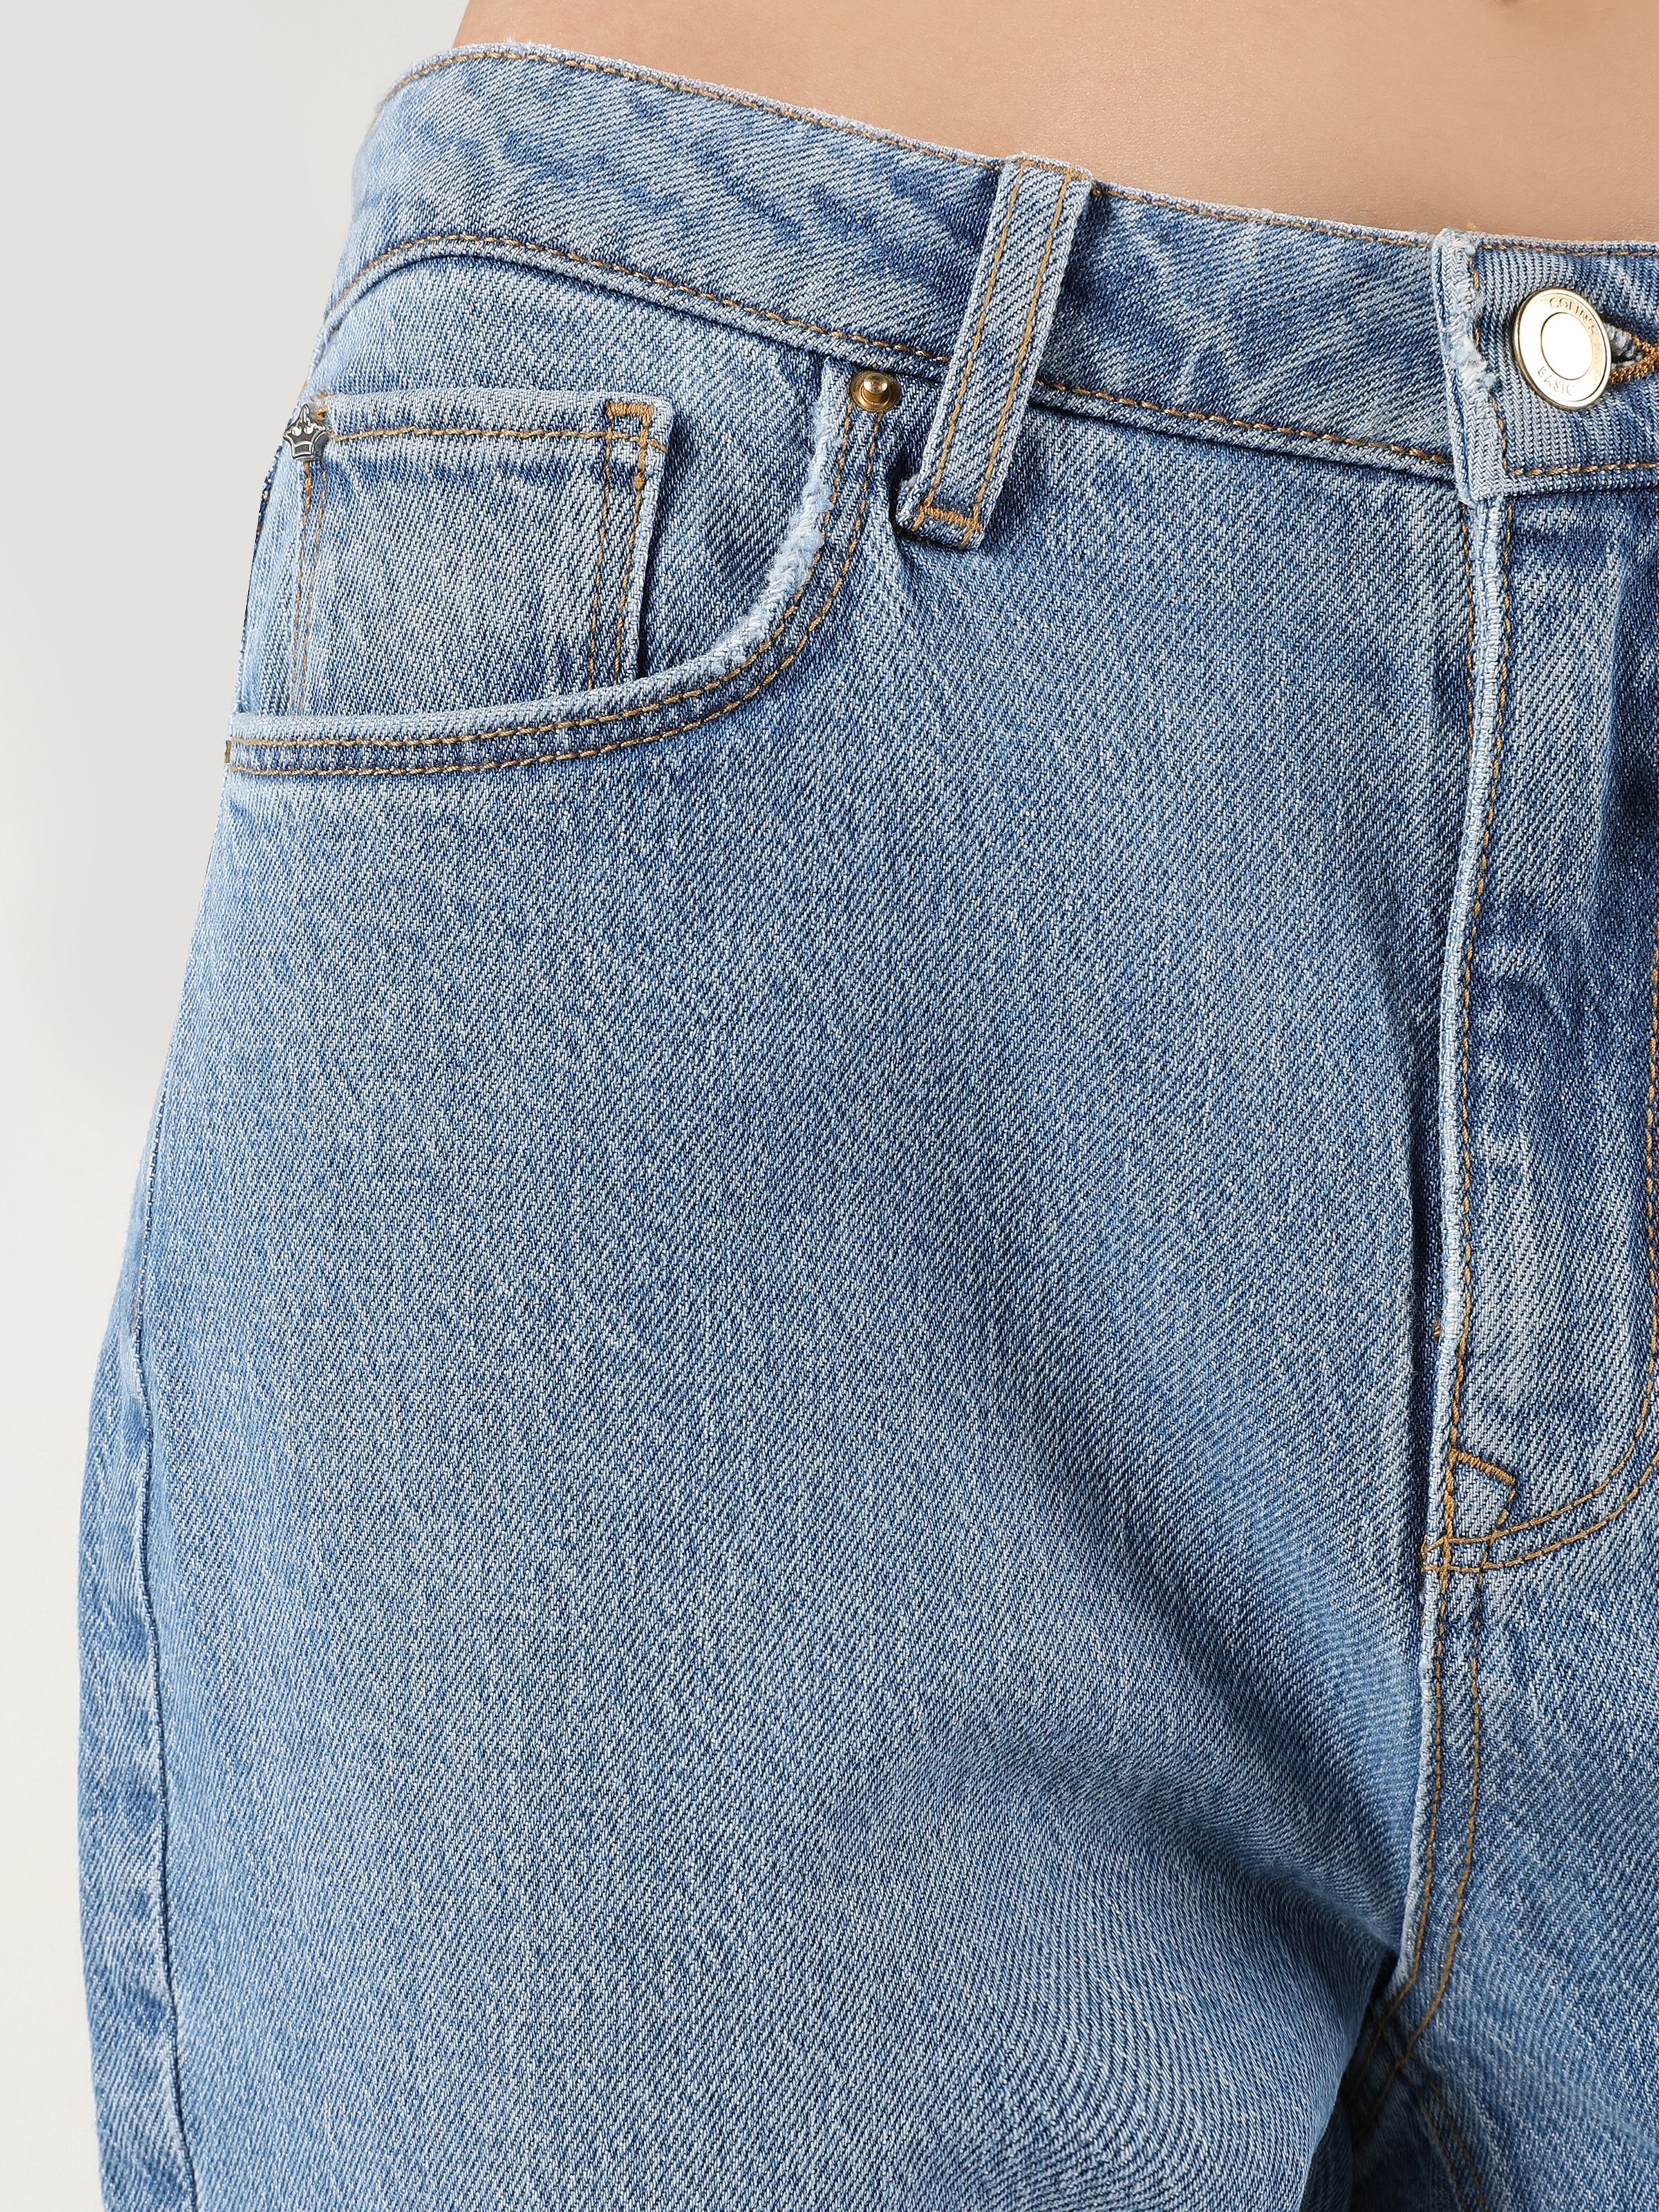 Afișați detalii pentru Pantaloni De Dama Albastru Mom Fit 896  MARIA CL1059105